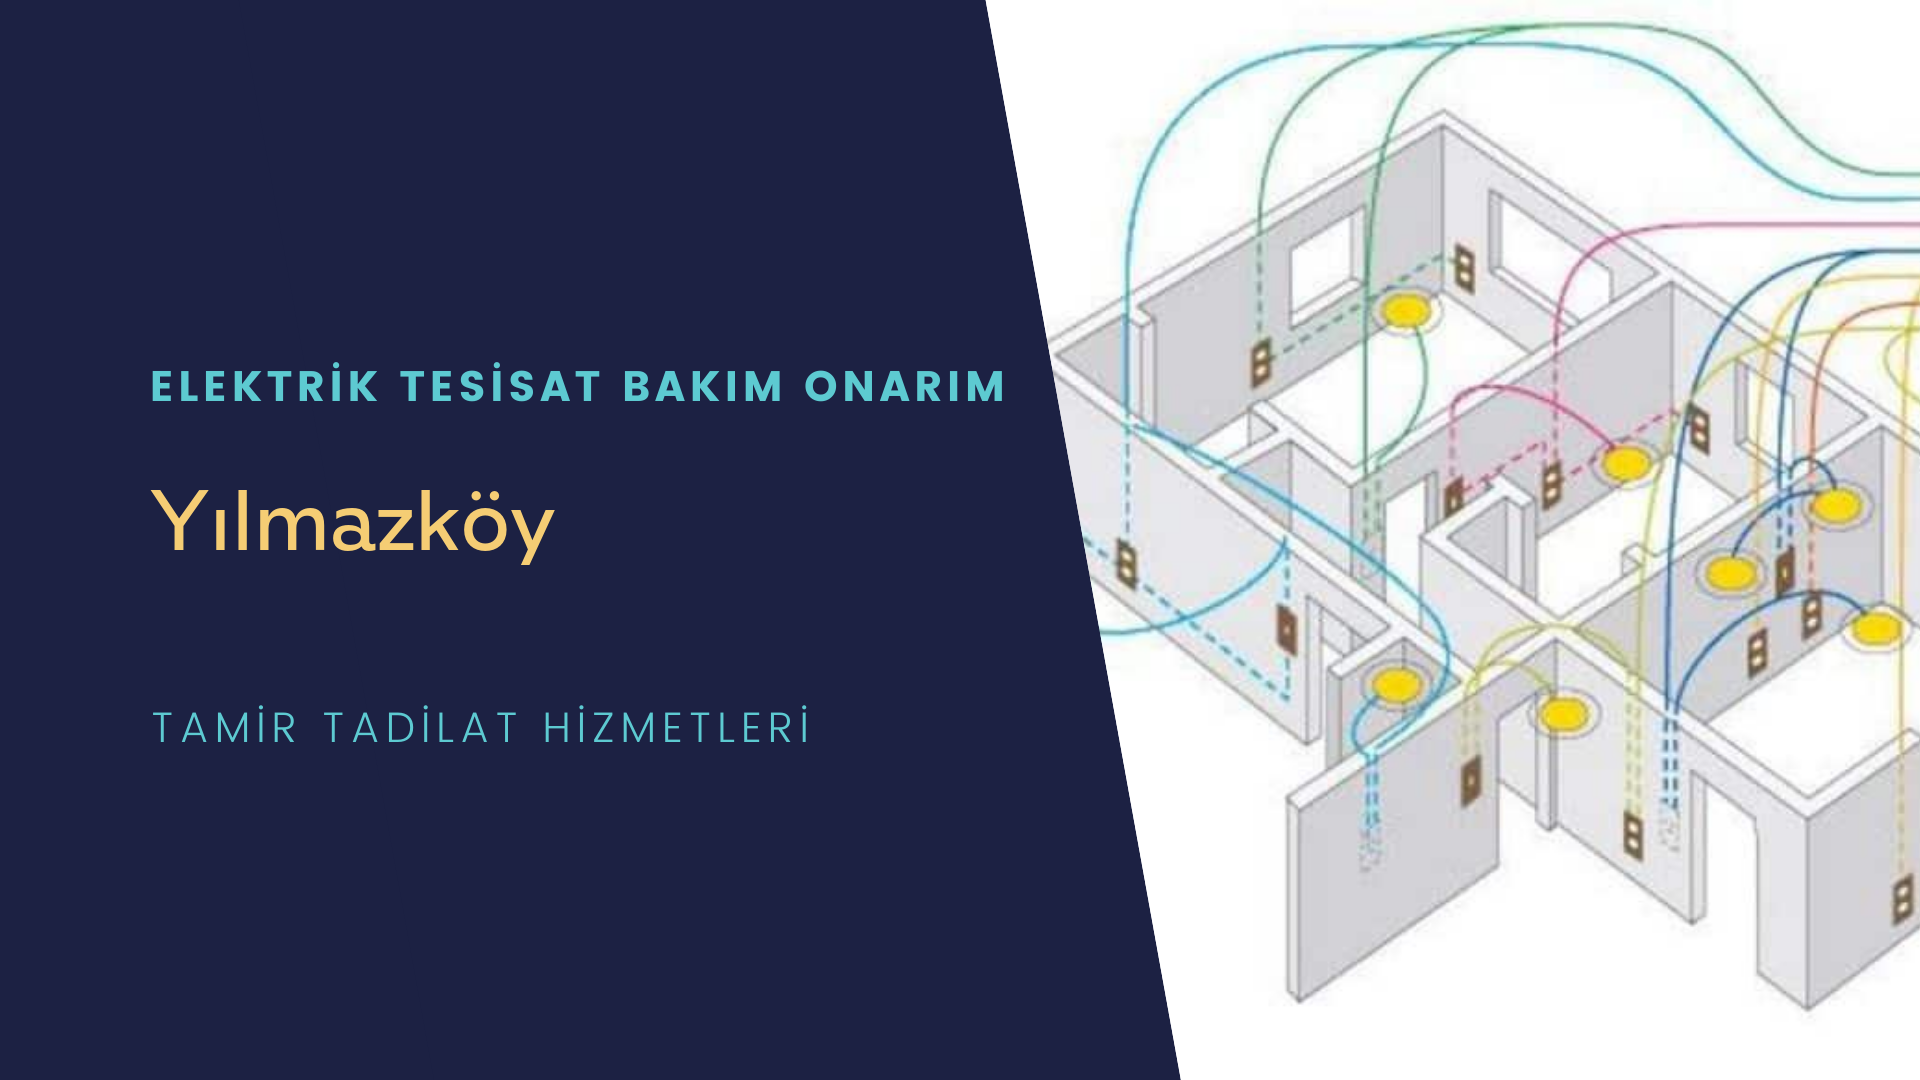 Yılmazköy'de elektrik tesisatı ustalarımı arıyorsunuz doğru adrestenizi Yılmazköy elektrik tesisatı ustalarımız 7/24 sizlere hizmet vermekten mutluluk duyar.